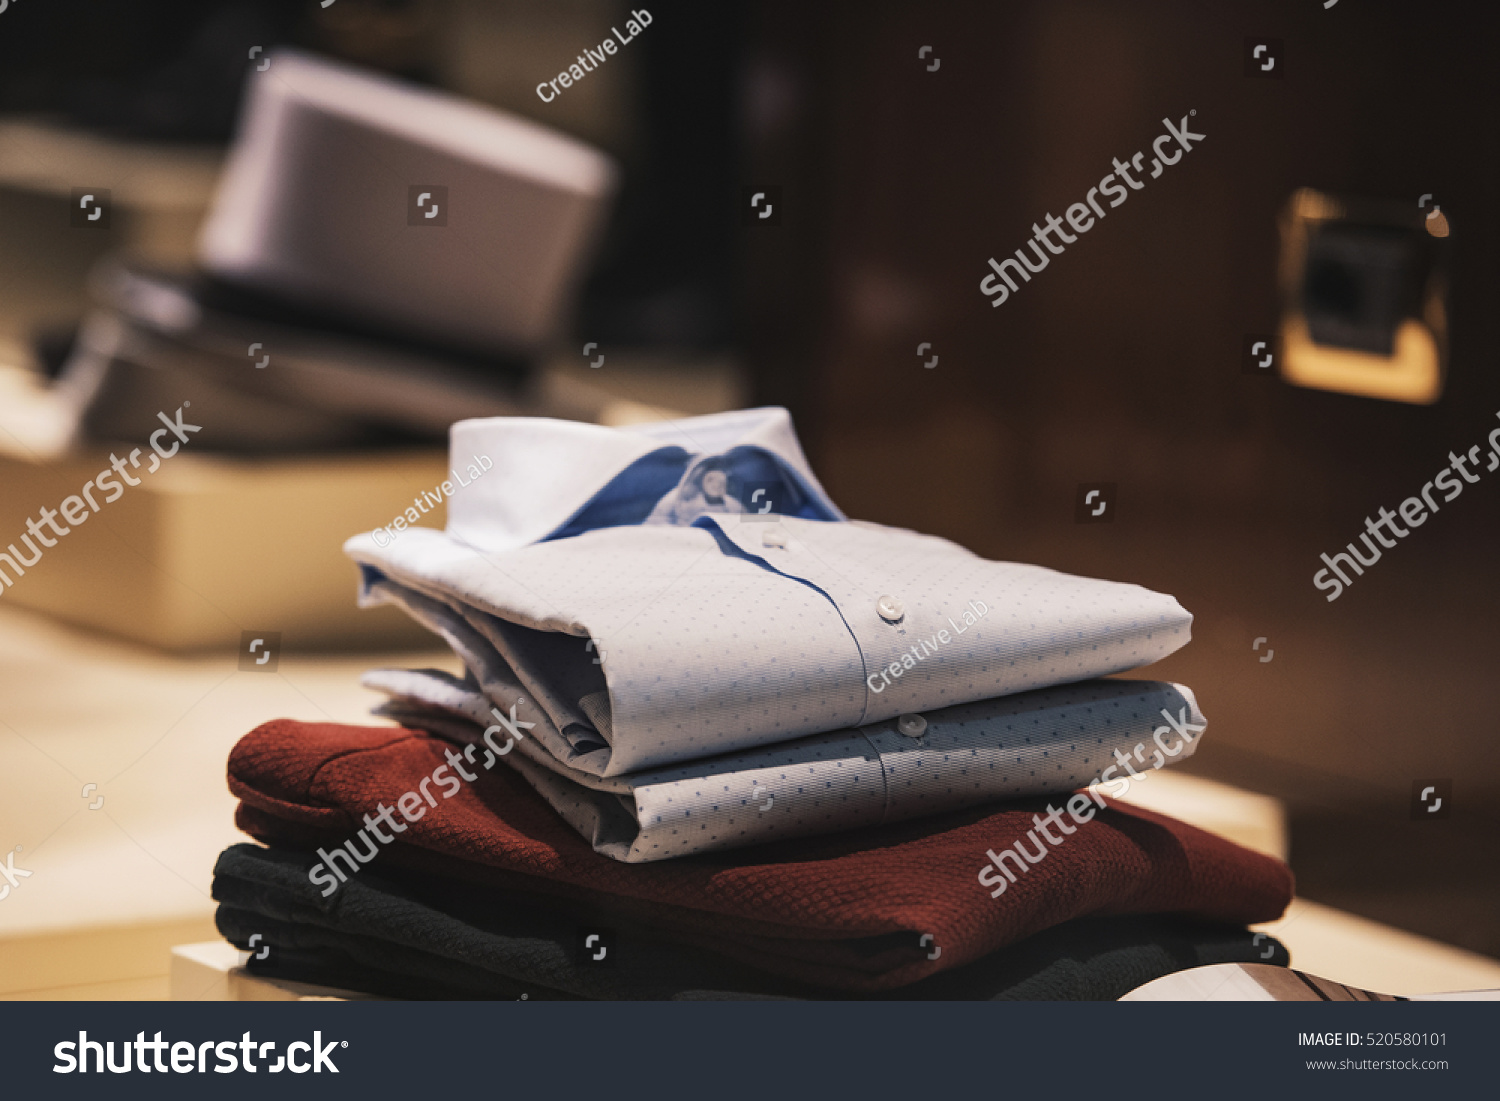 Men Elegant Clothing Stock Photo 520580101 - Shutterstock